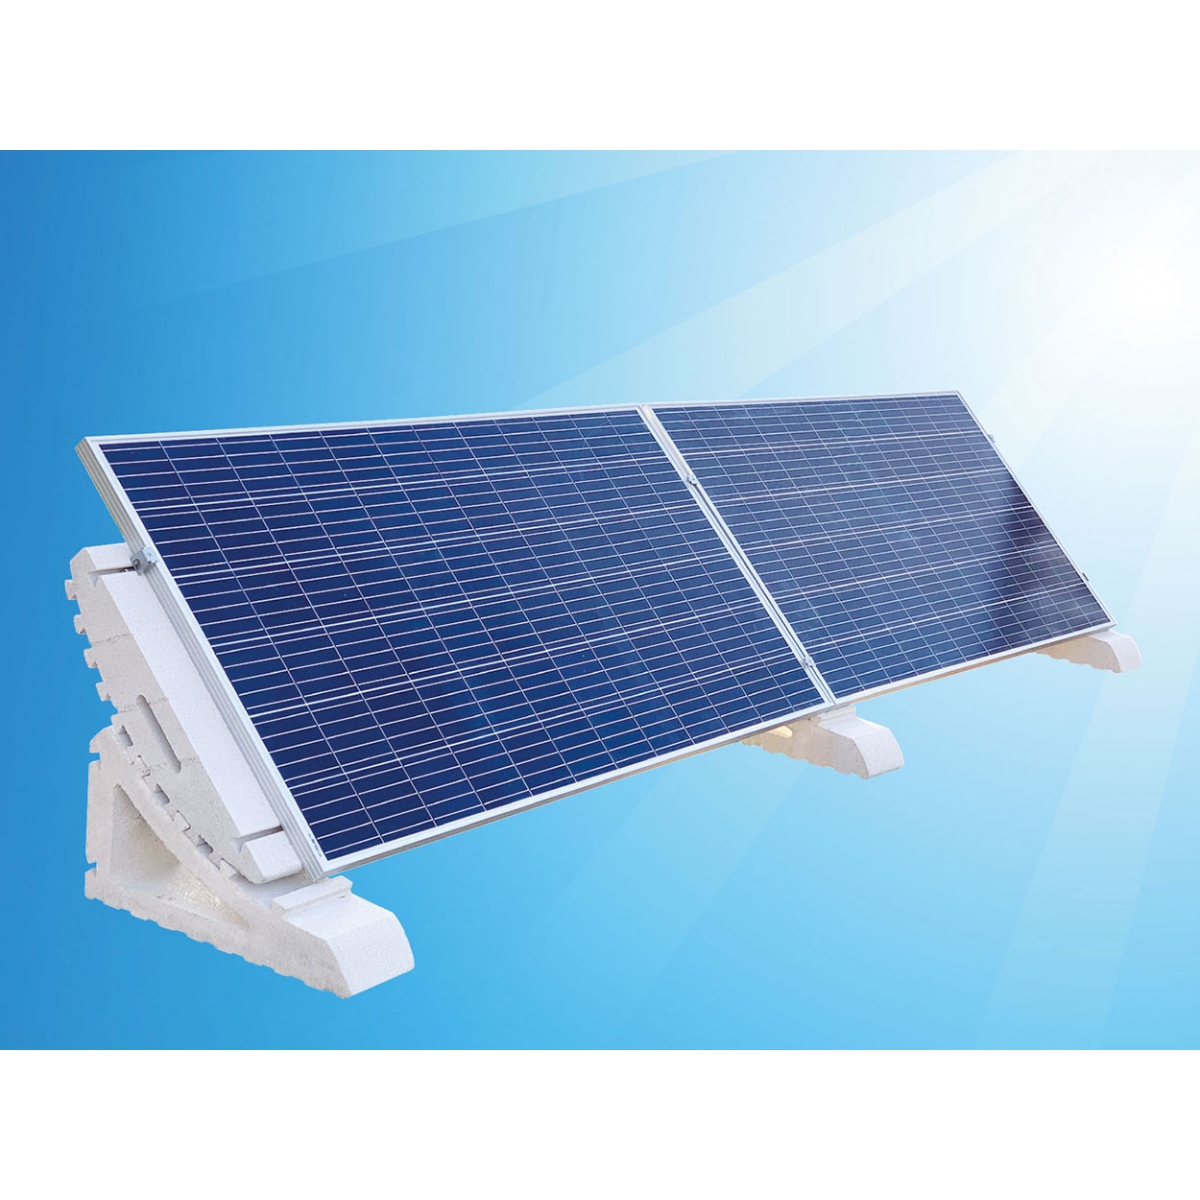 Palete 10u Suporte ajustável para painéis solares Vernisol 10